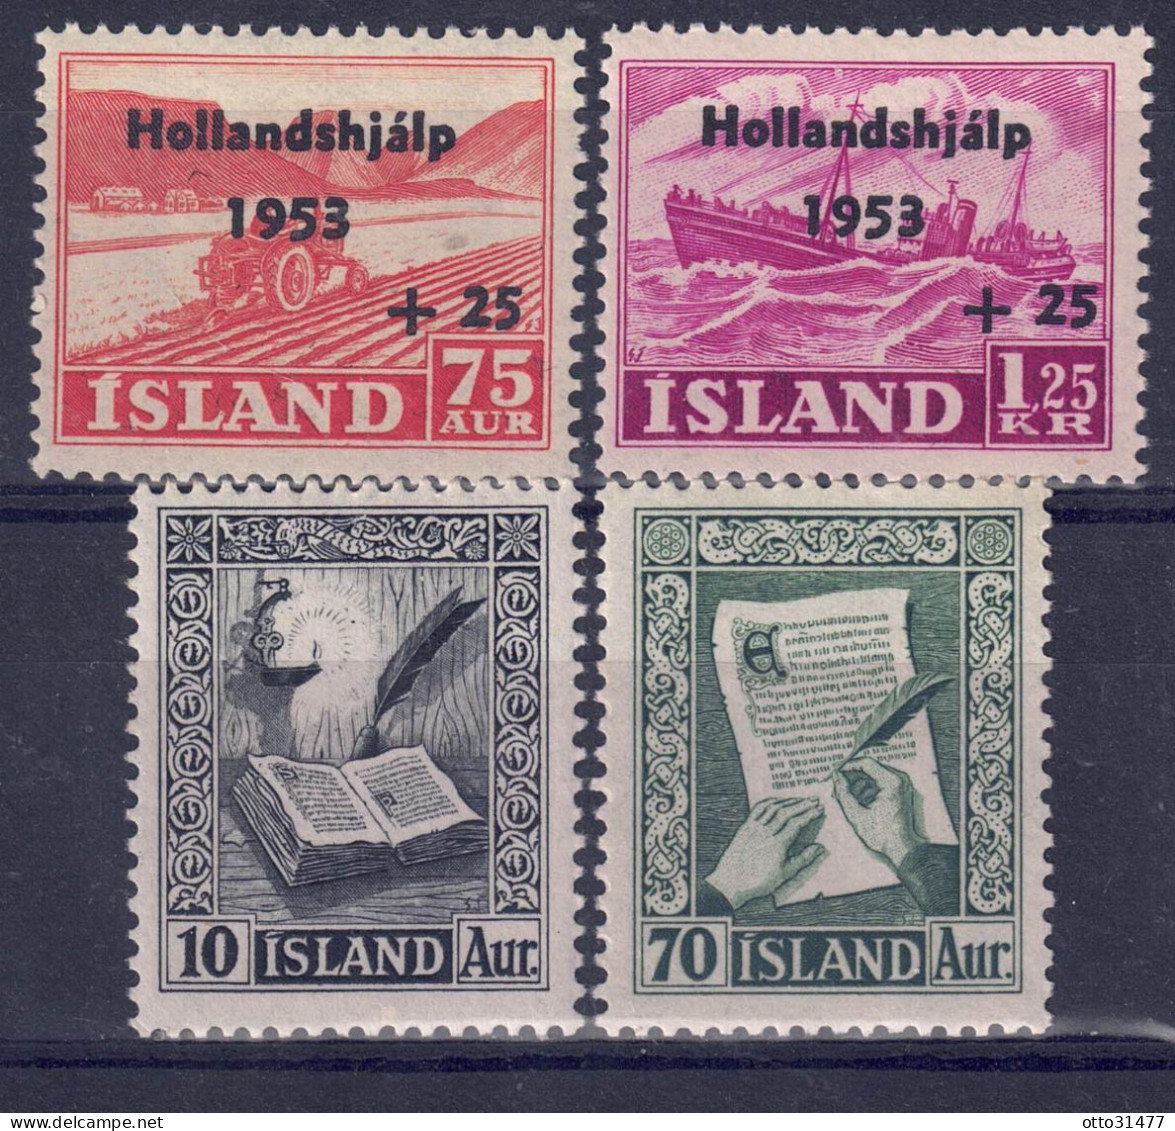 Island 1953 - Markenlot Aus Nr. 285 - 288, Postfrisch ** / MNH - Unused Stamps